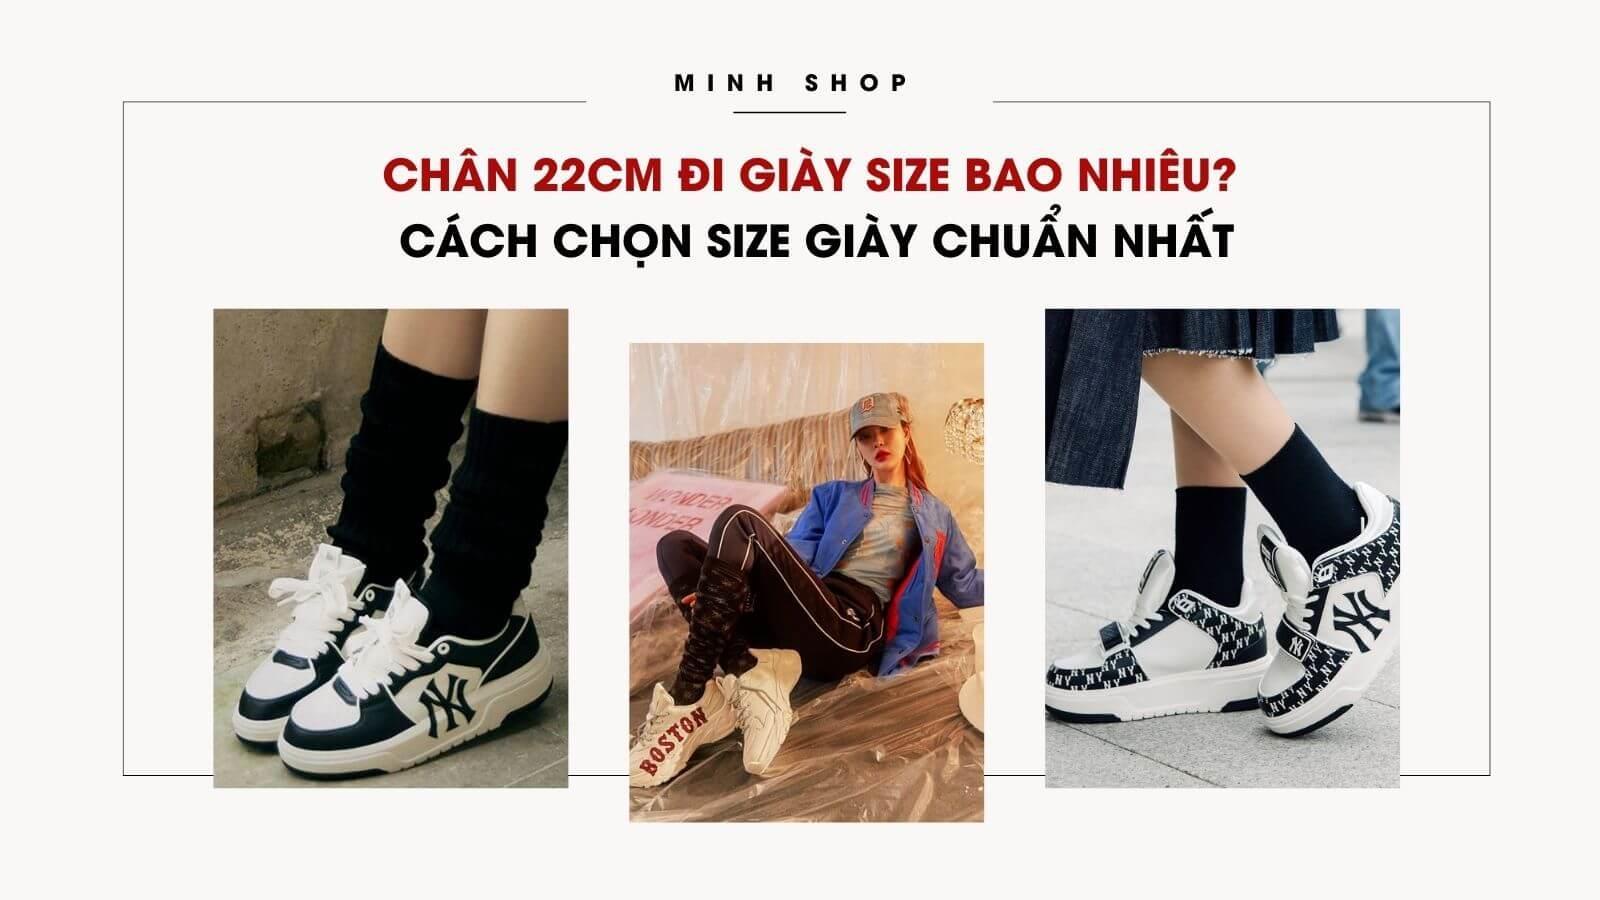 chan-22cm-di-giay-size-bao-nhieu-cach-chon-size-giay-chuan-nhat